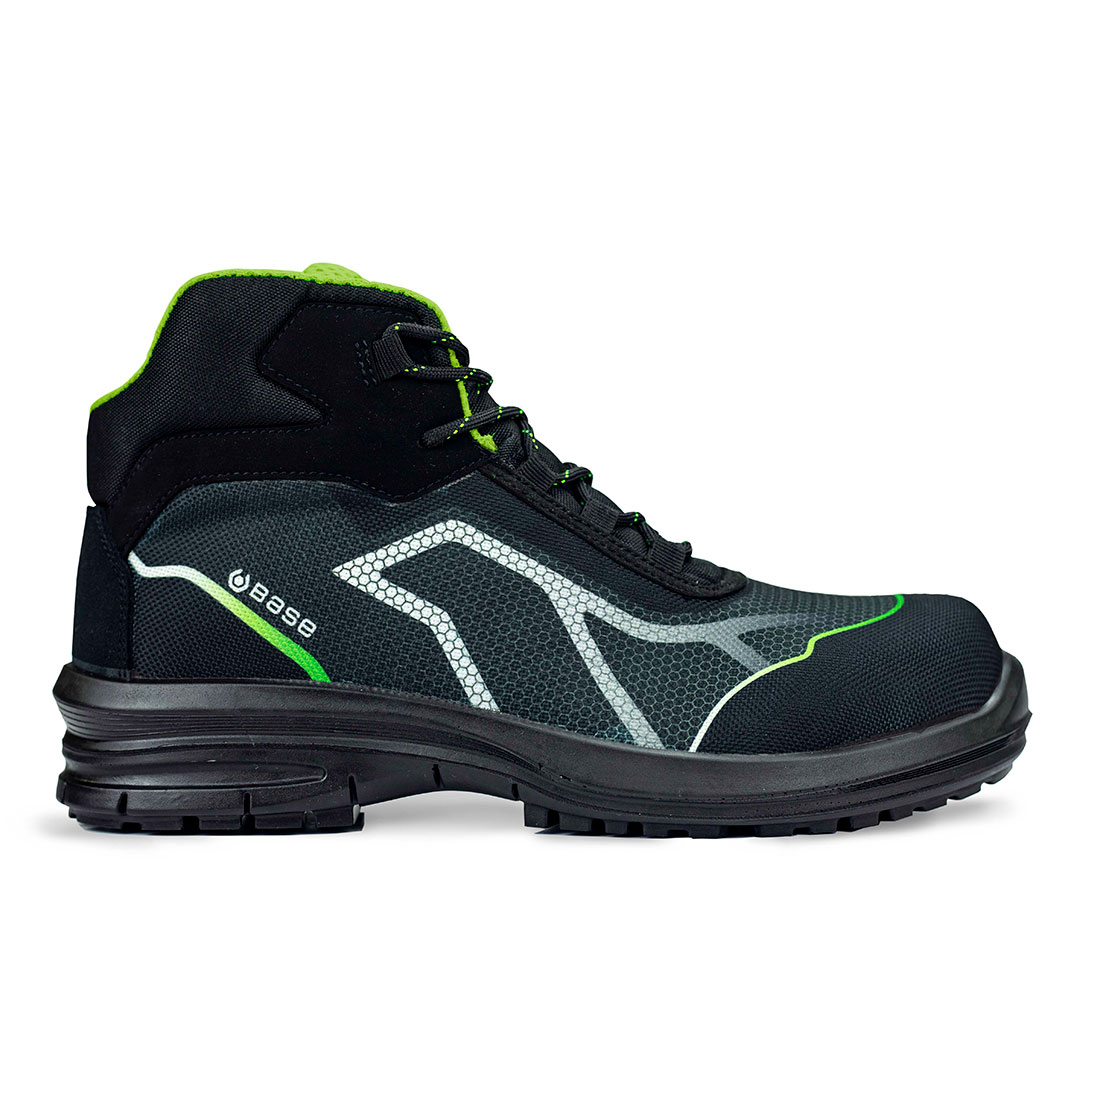 Base OREN TOP Ankle Shoes Black/Green B0979